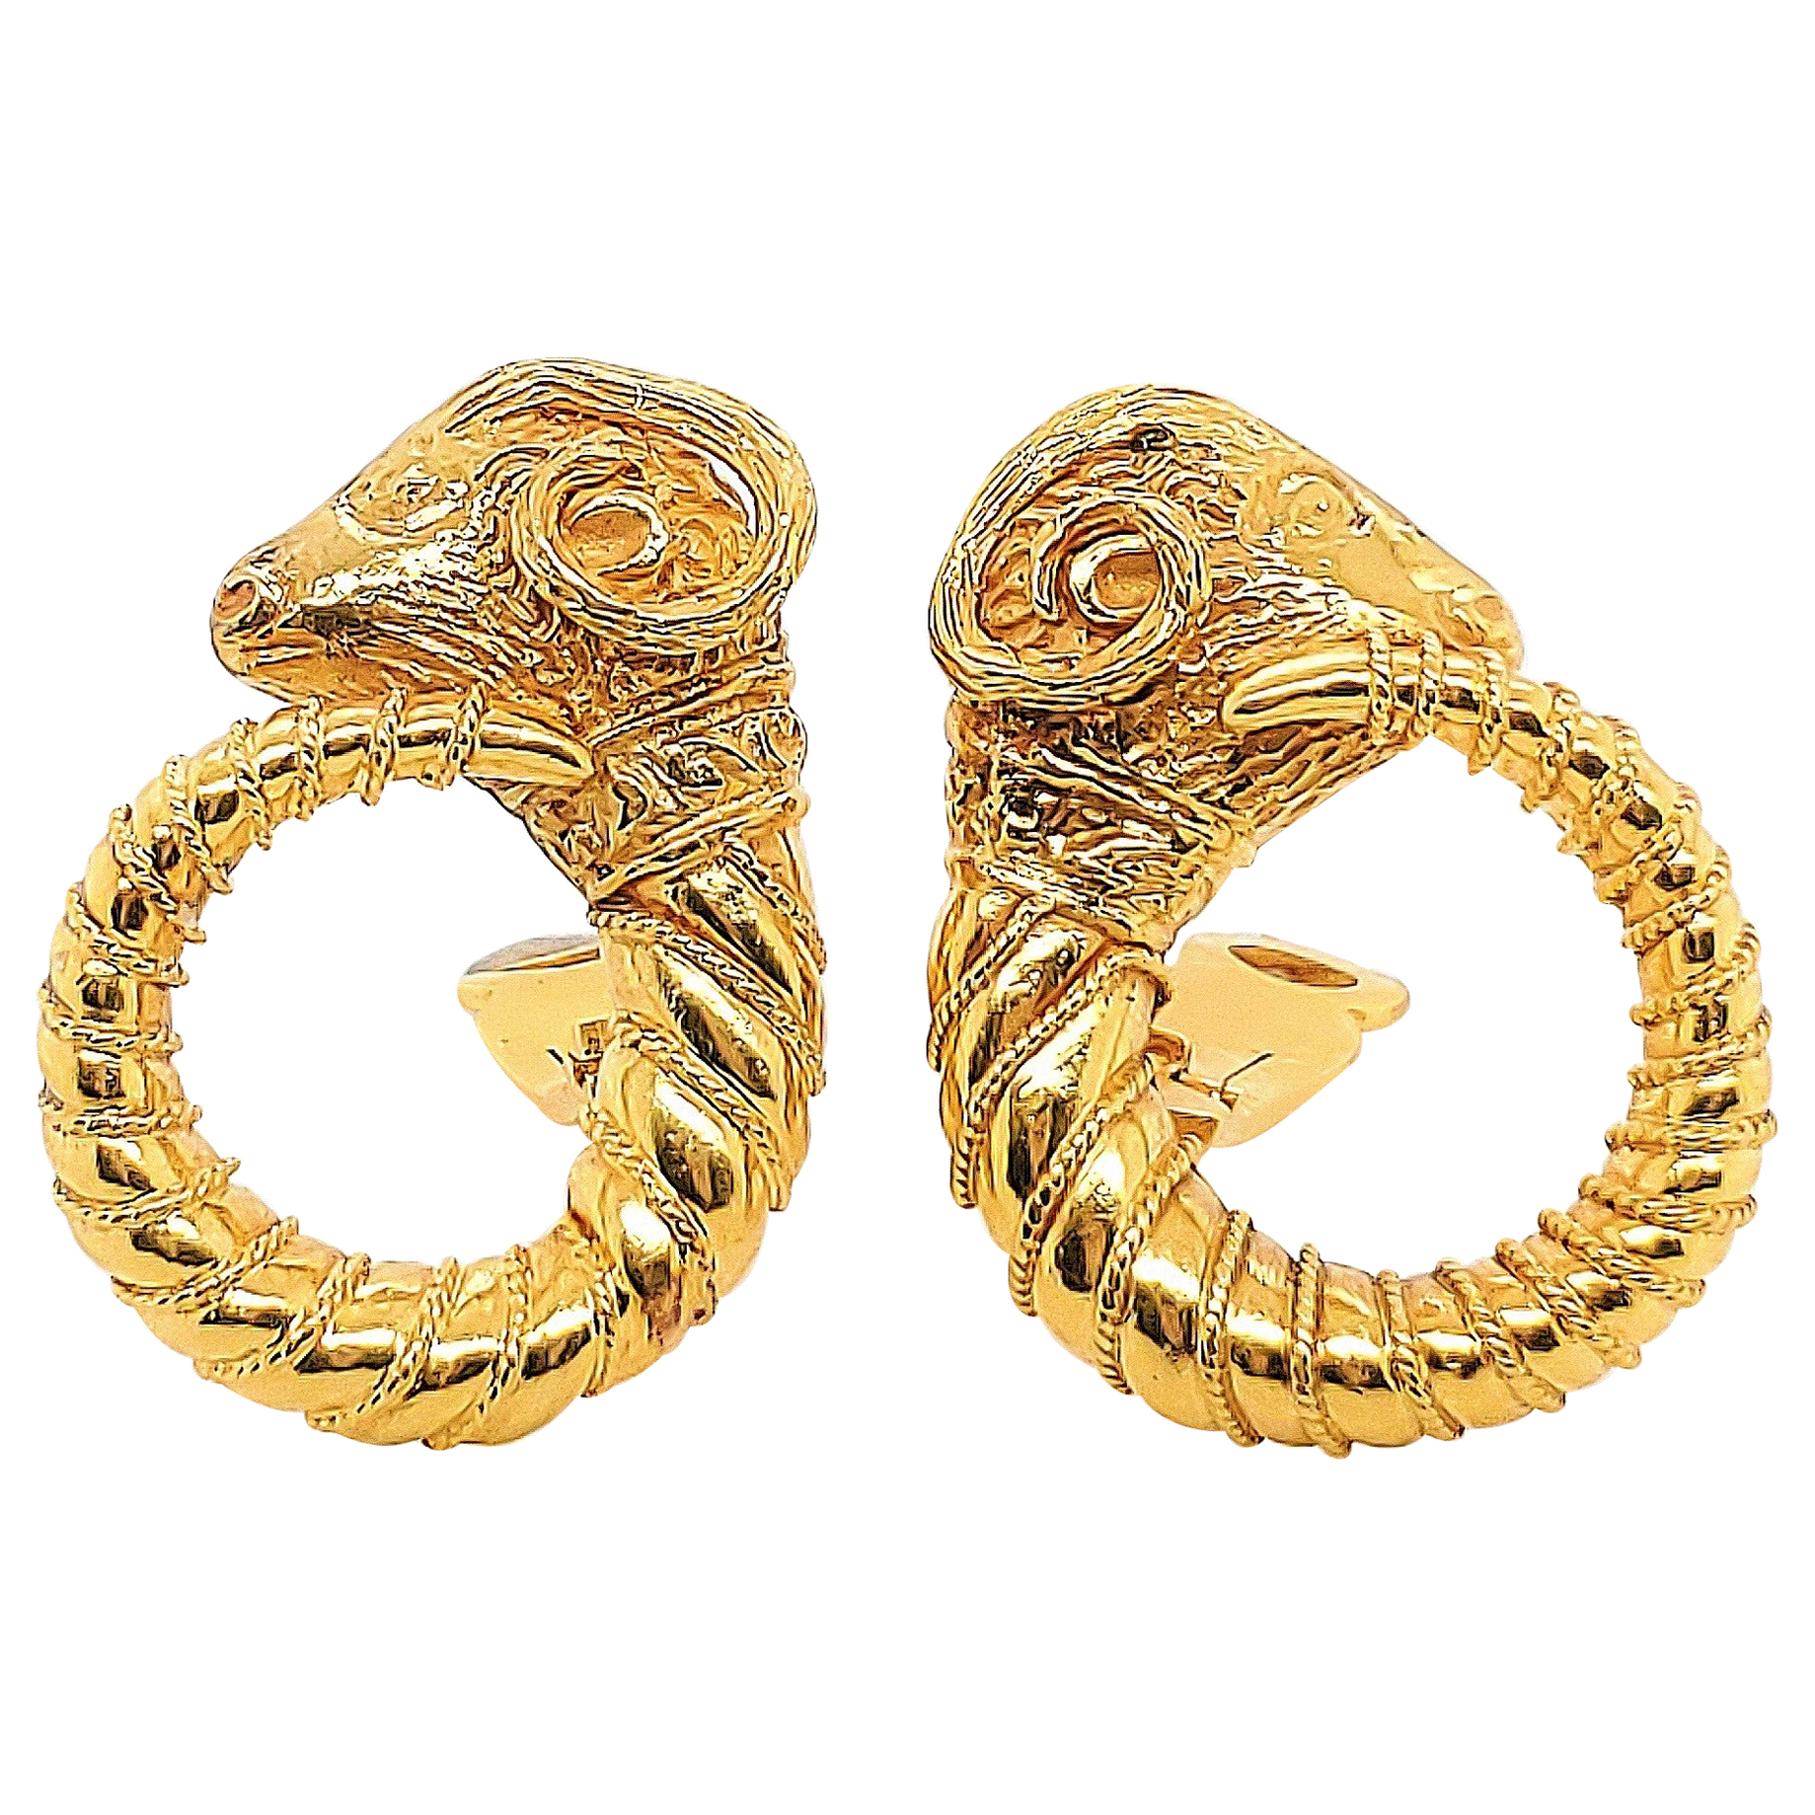 Zolotas 18 Karat Gold Earrings